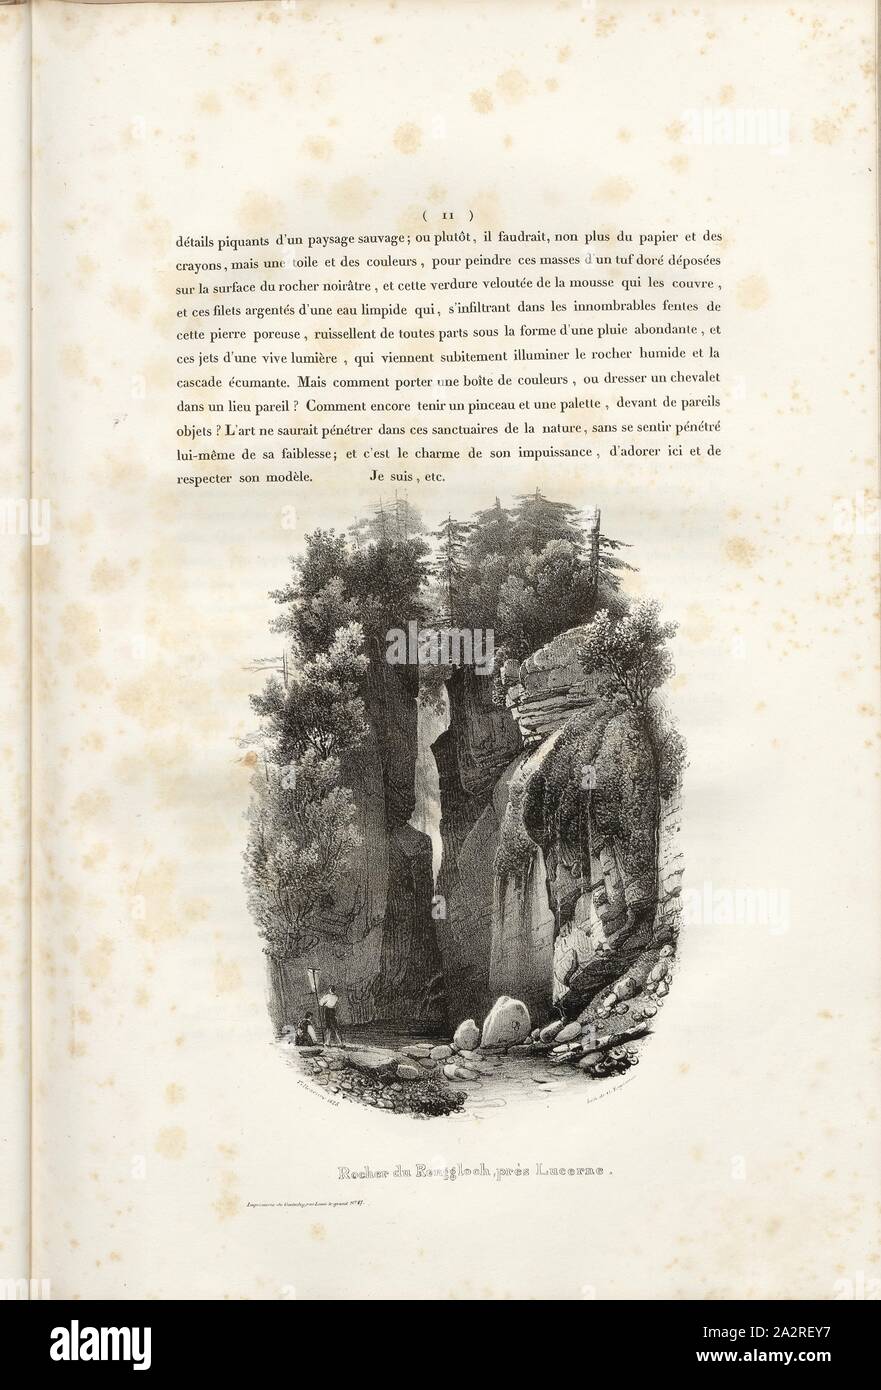 Rocher du Renggloch, near Lucerne, Renggloch, gorge near Lucerne, Signed: Villeneuve, G. Engelmann, lithograph, plate 1, p. 11 (vol. 2, part 3), Villeneuve, M.; Engelmann, Godefroy (lith.), 1825, Hilaire Léon Sazerac, Godefroy Engelmann: Lettres sur la Suisse (...). Paris: [s.n.], 1823-1832 Stock Photo